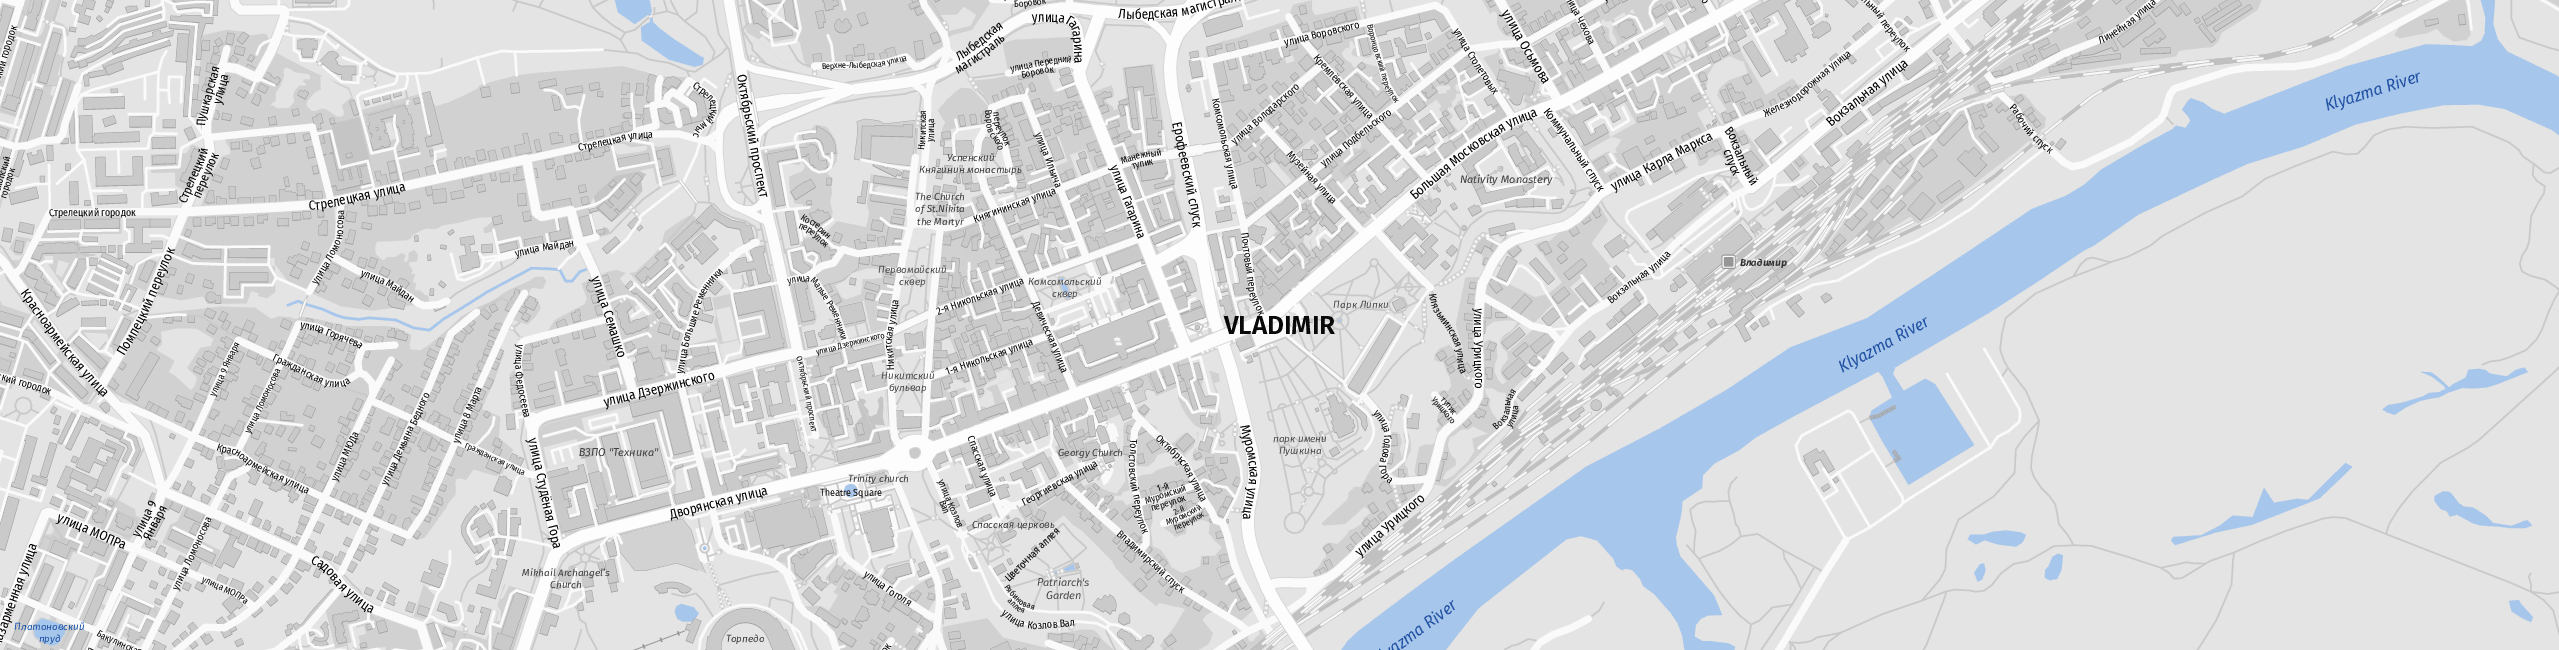 Stadtplan Vladimir zum Downloaden.